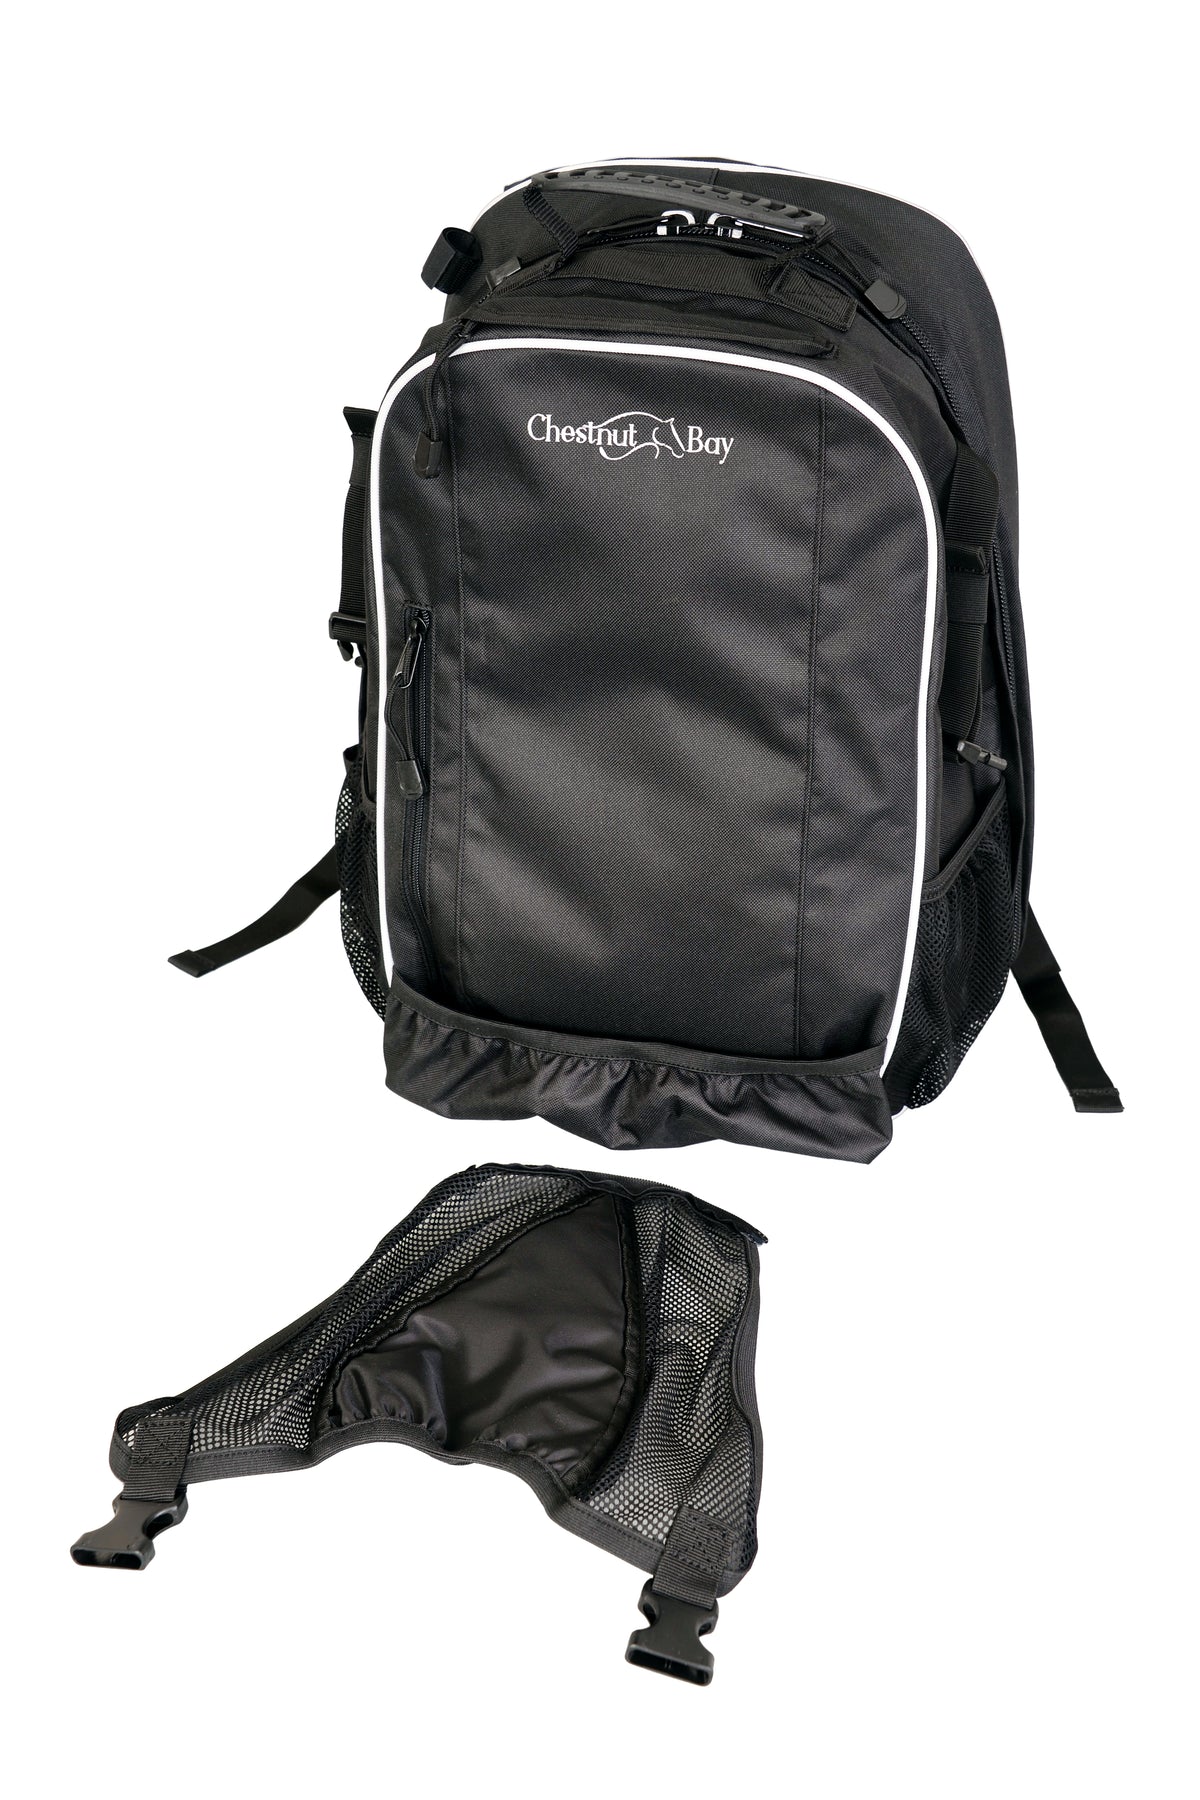 Chestnut Bay Ringside Black Backpack #CB9650